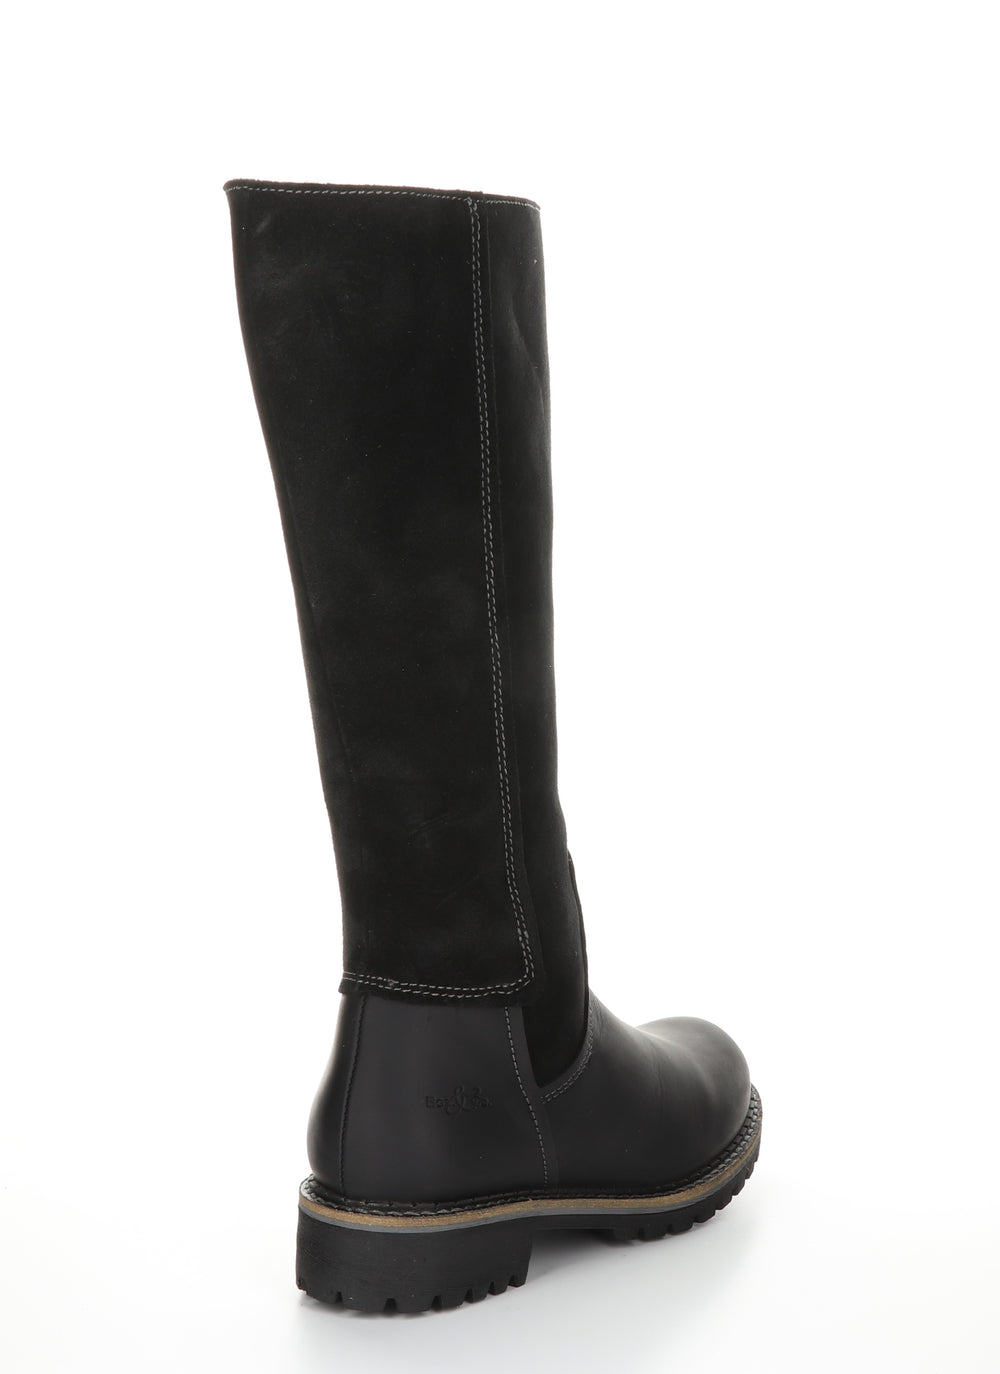 HUDSON Black Zip Up Boots|HUDSON Bottes avec Fermeture Zippée in Noir